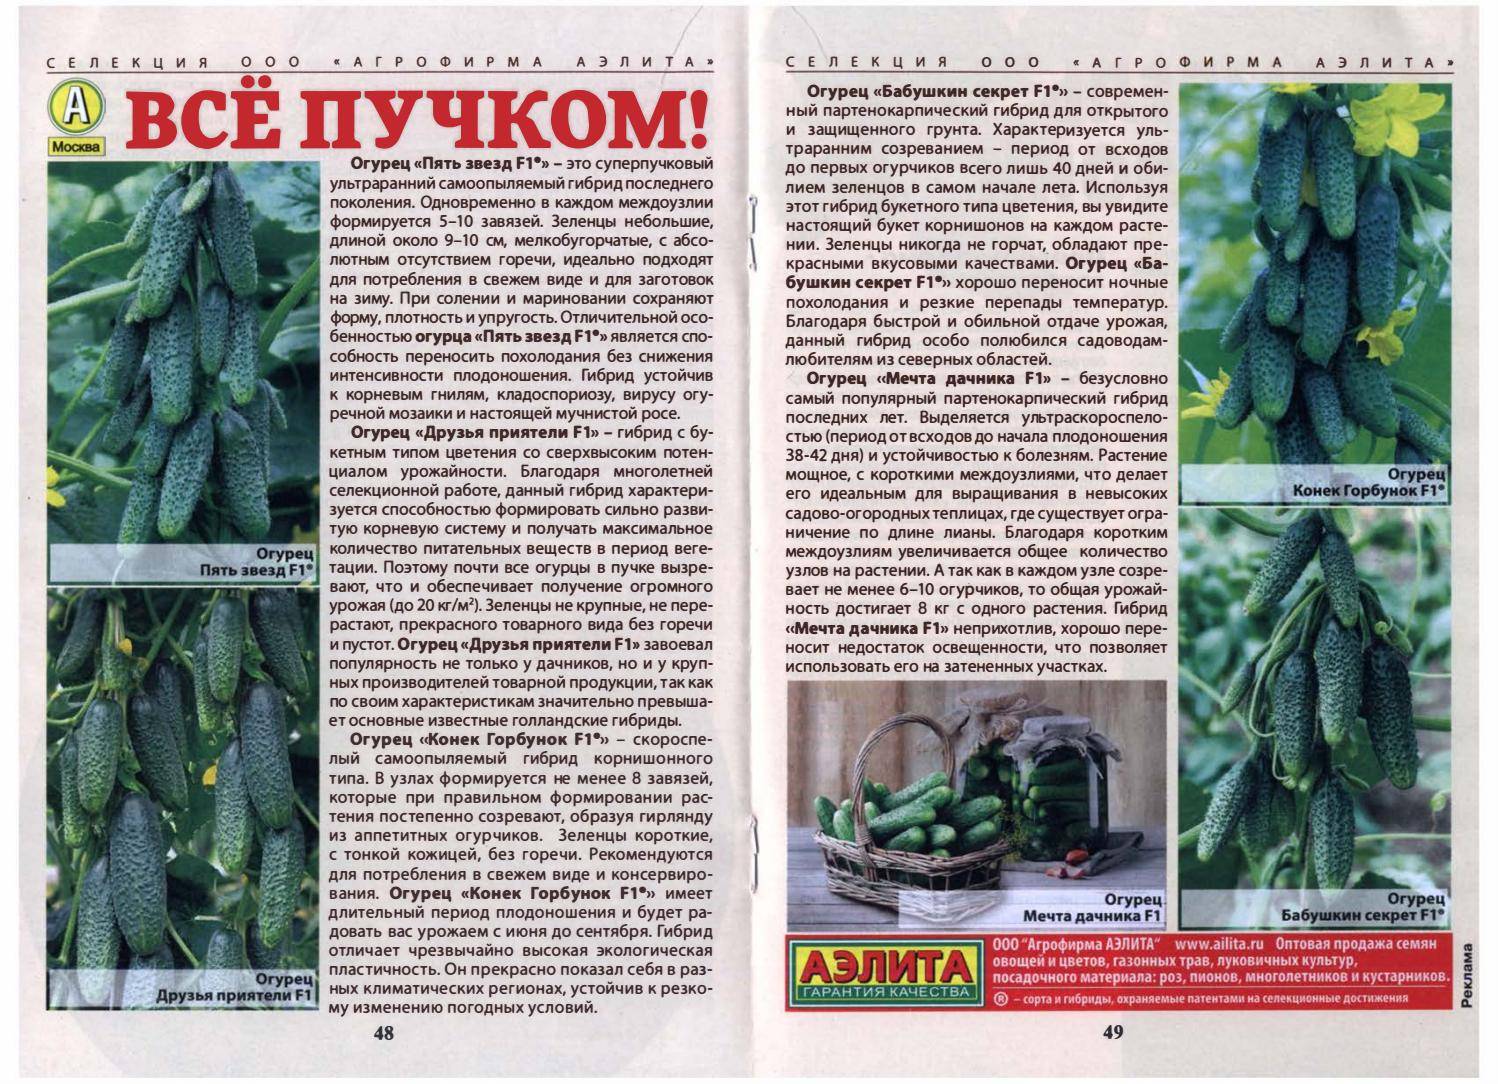 Огурцы «сибирская гирлянда f1»: характеристики, достоинства, особенности выращивания